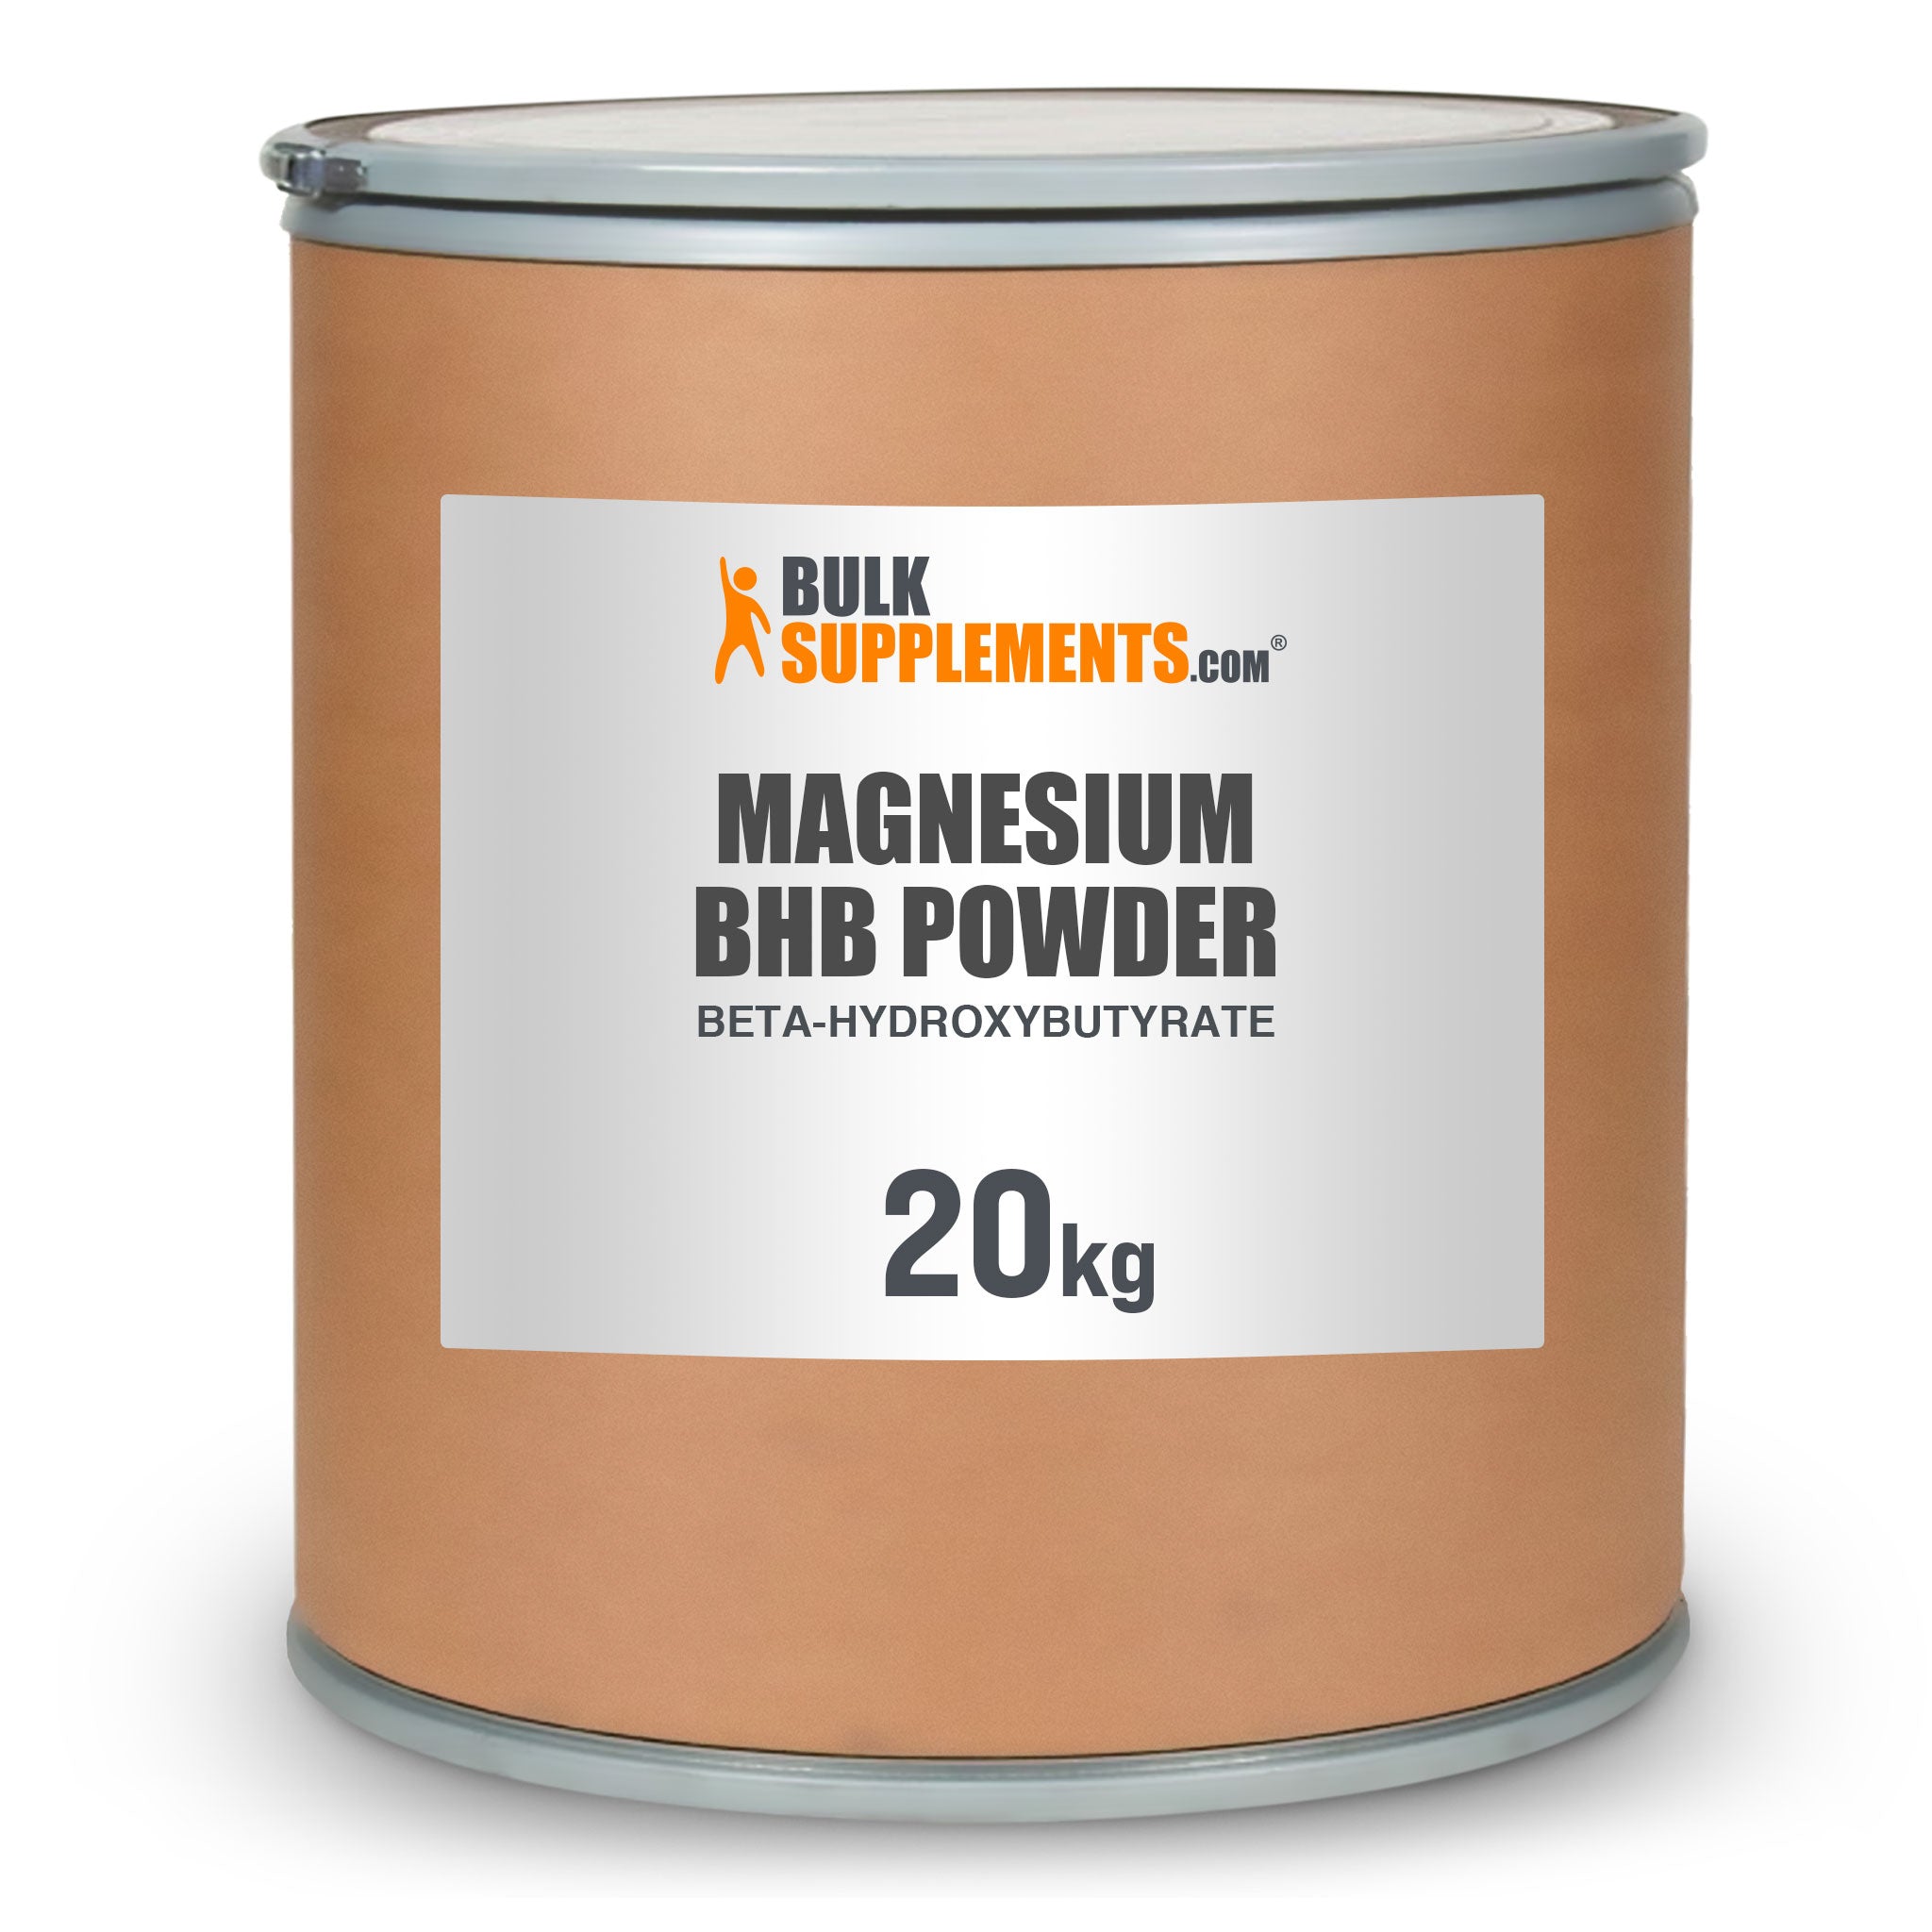 BulkSupplements Magnesium BHB Powder Beta-hydroxybutyrate 20 Kilograms drum